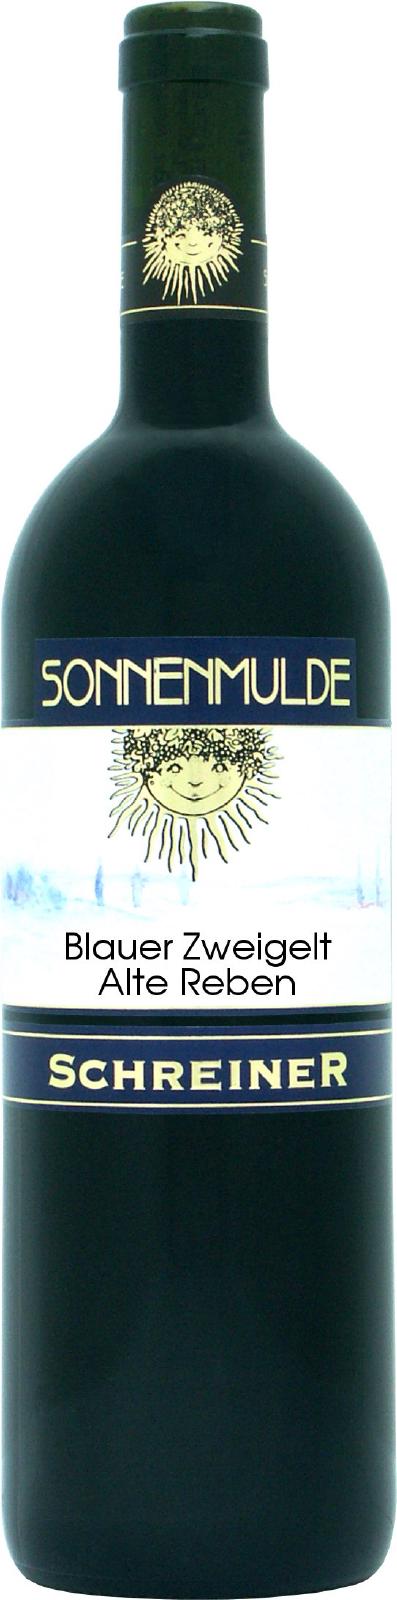 A bottle of Blauer Zweigelt Alte Reben